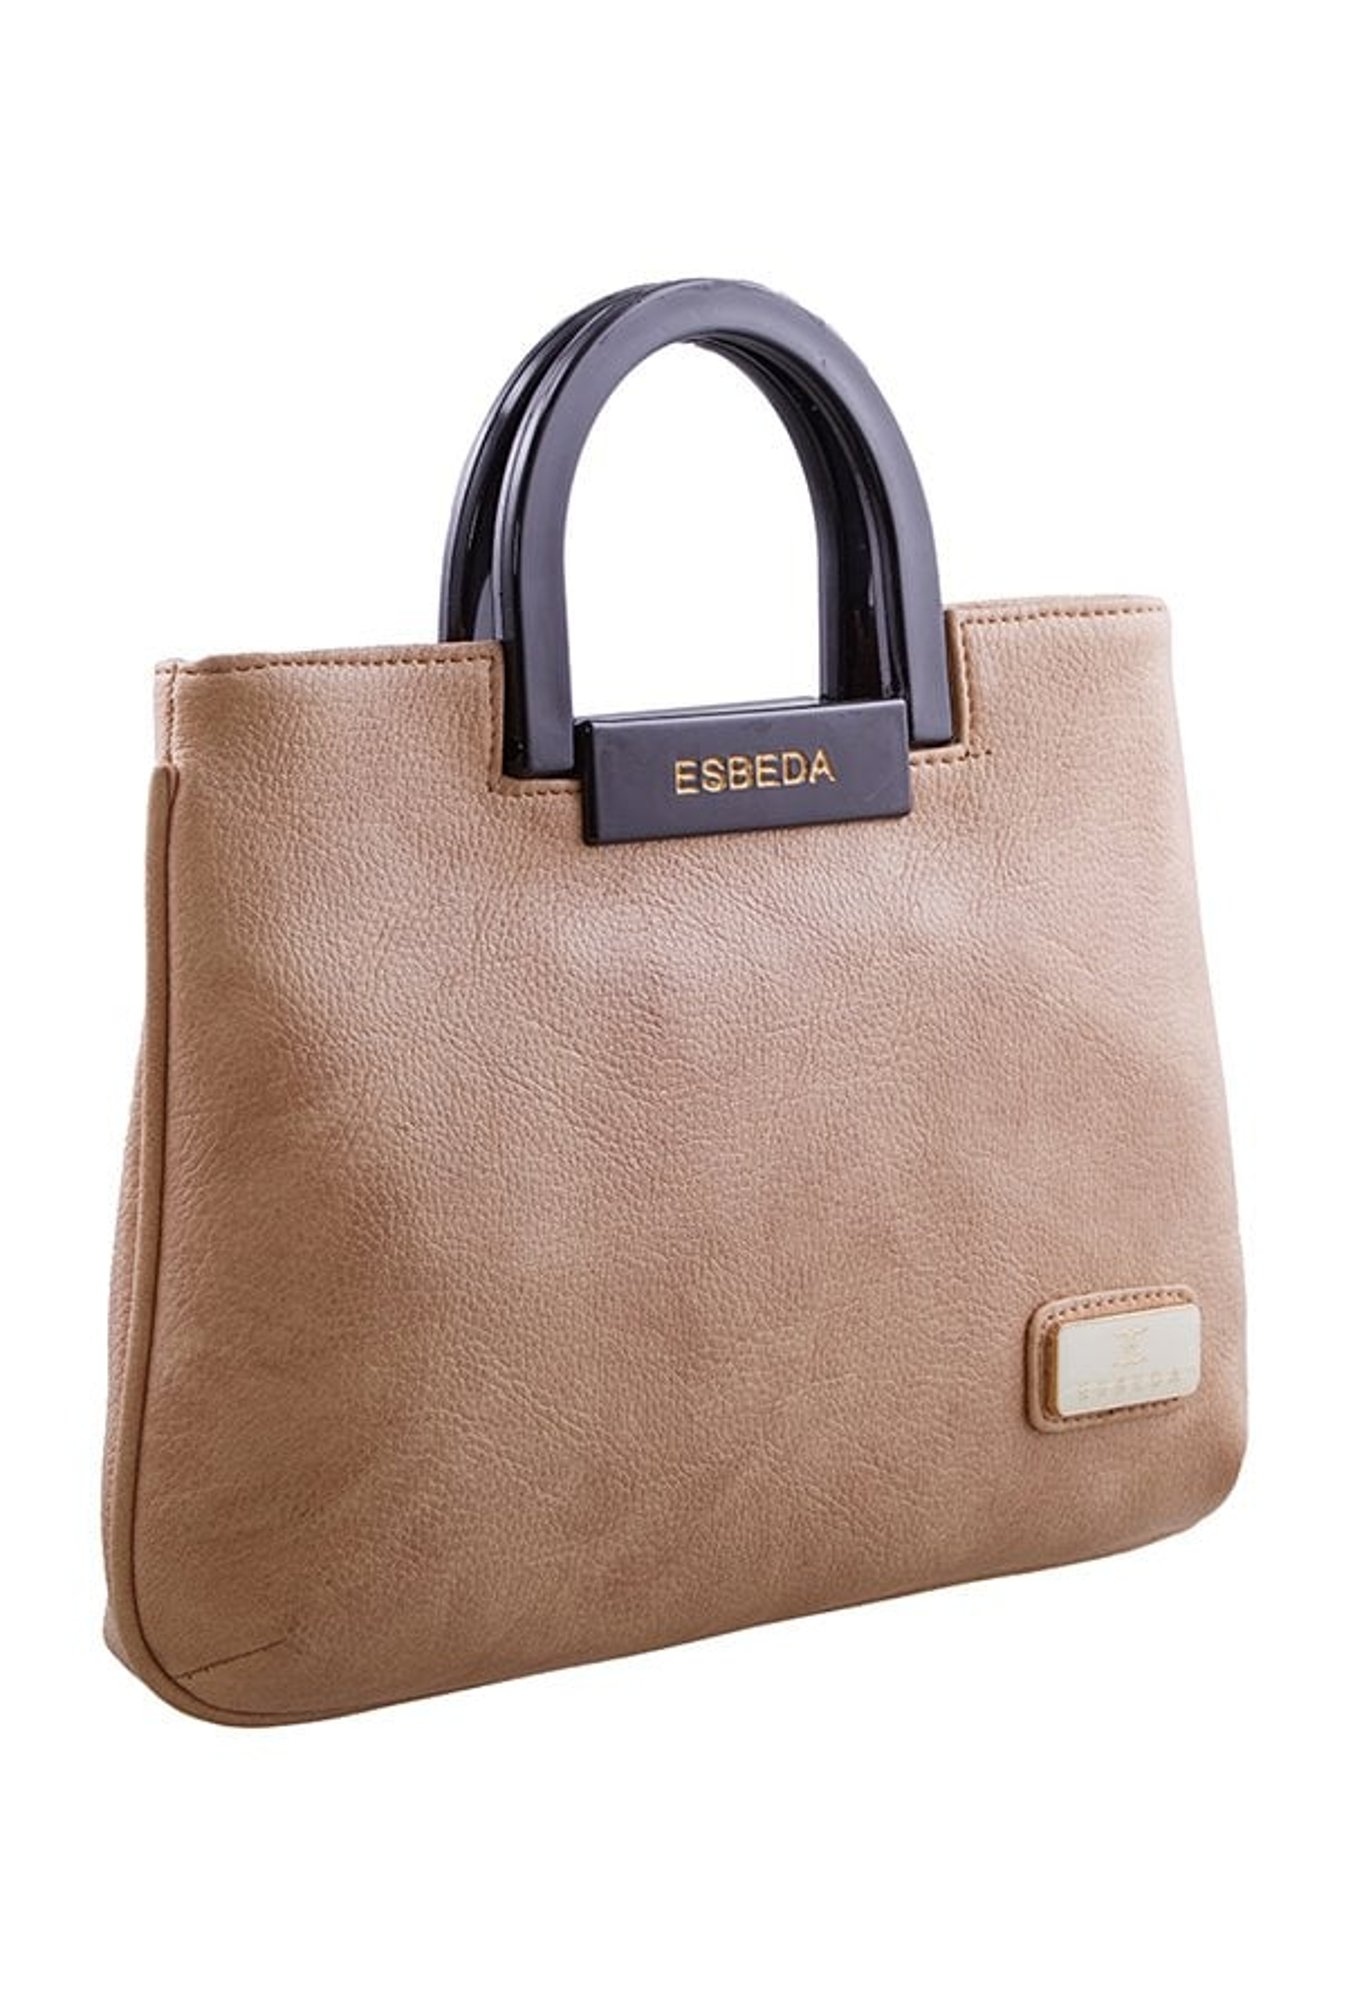 Esbeda Clutch - 8121011 Beige Ladies Handbag at Rs 944/piece | Ladies Hand  Bags in Mumbai | ID: 15680014888